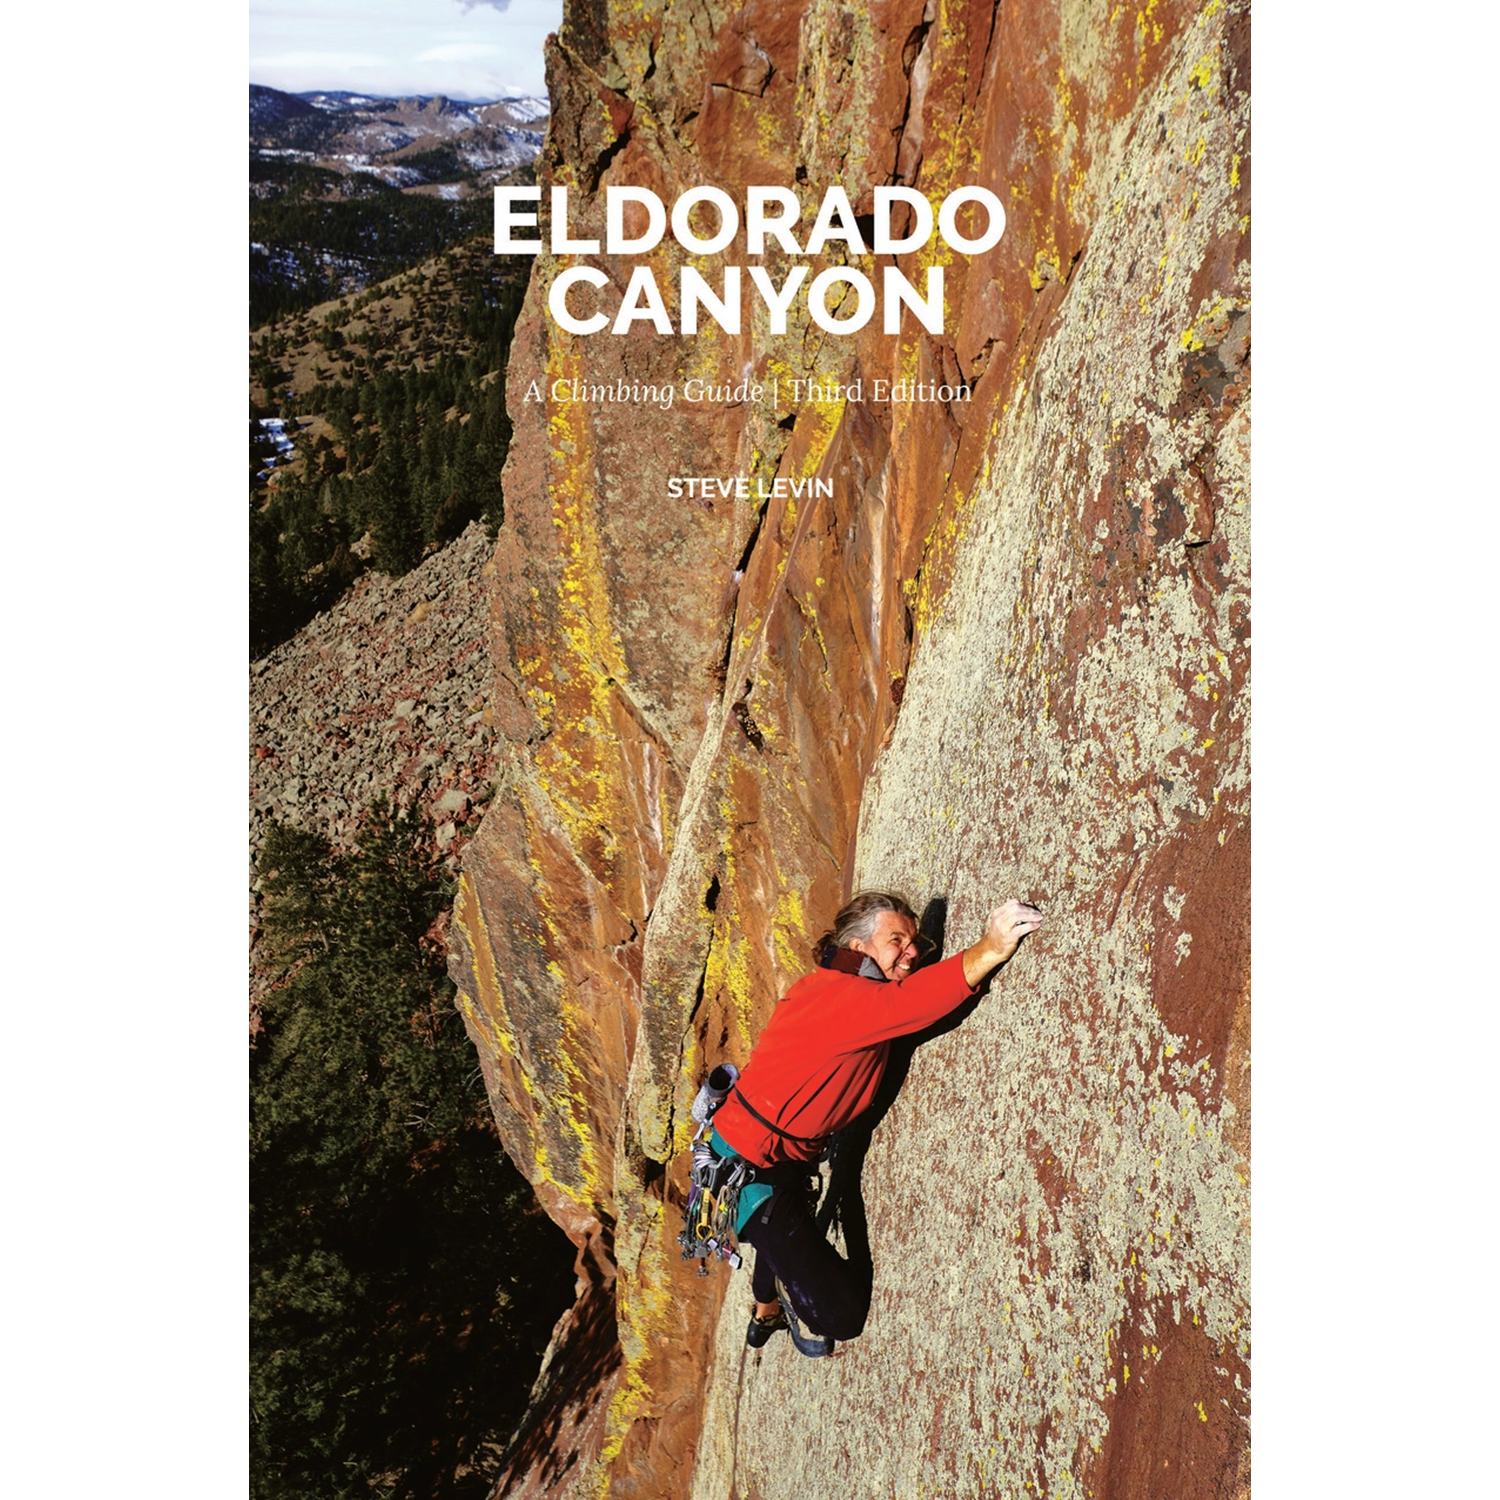 Eldorado Canyon: A Climbing Guide